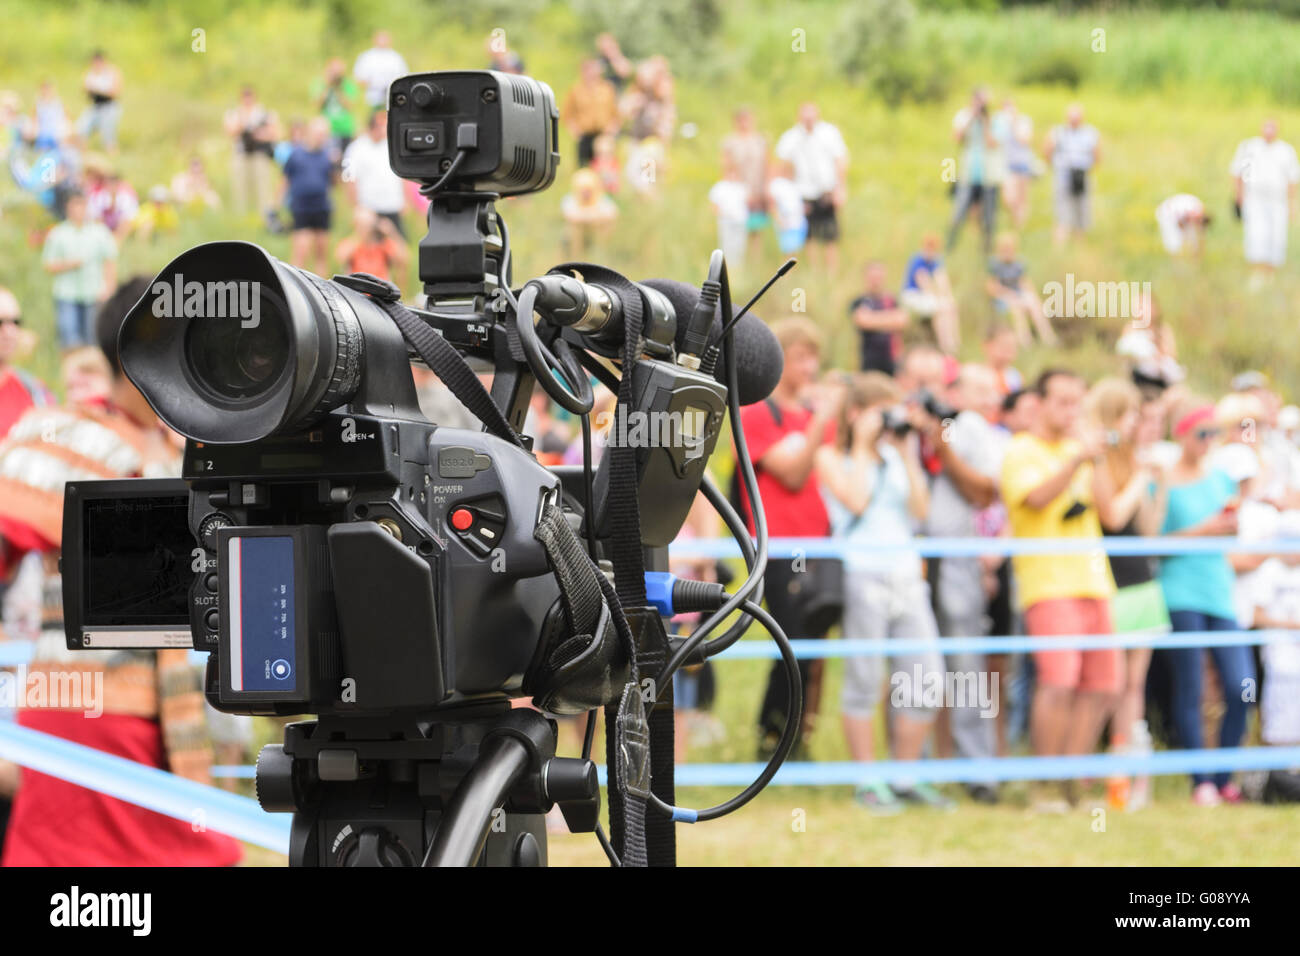 La couverture d'un événement avec une caméra vidéo Photo Stock - Alamy